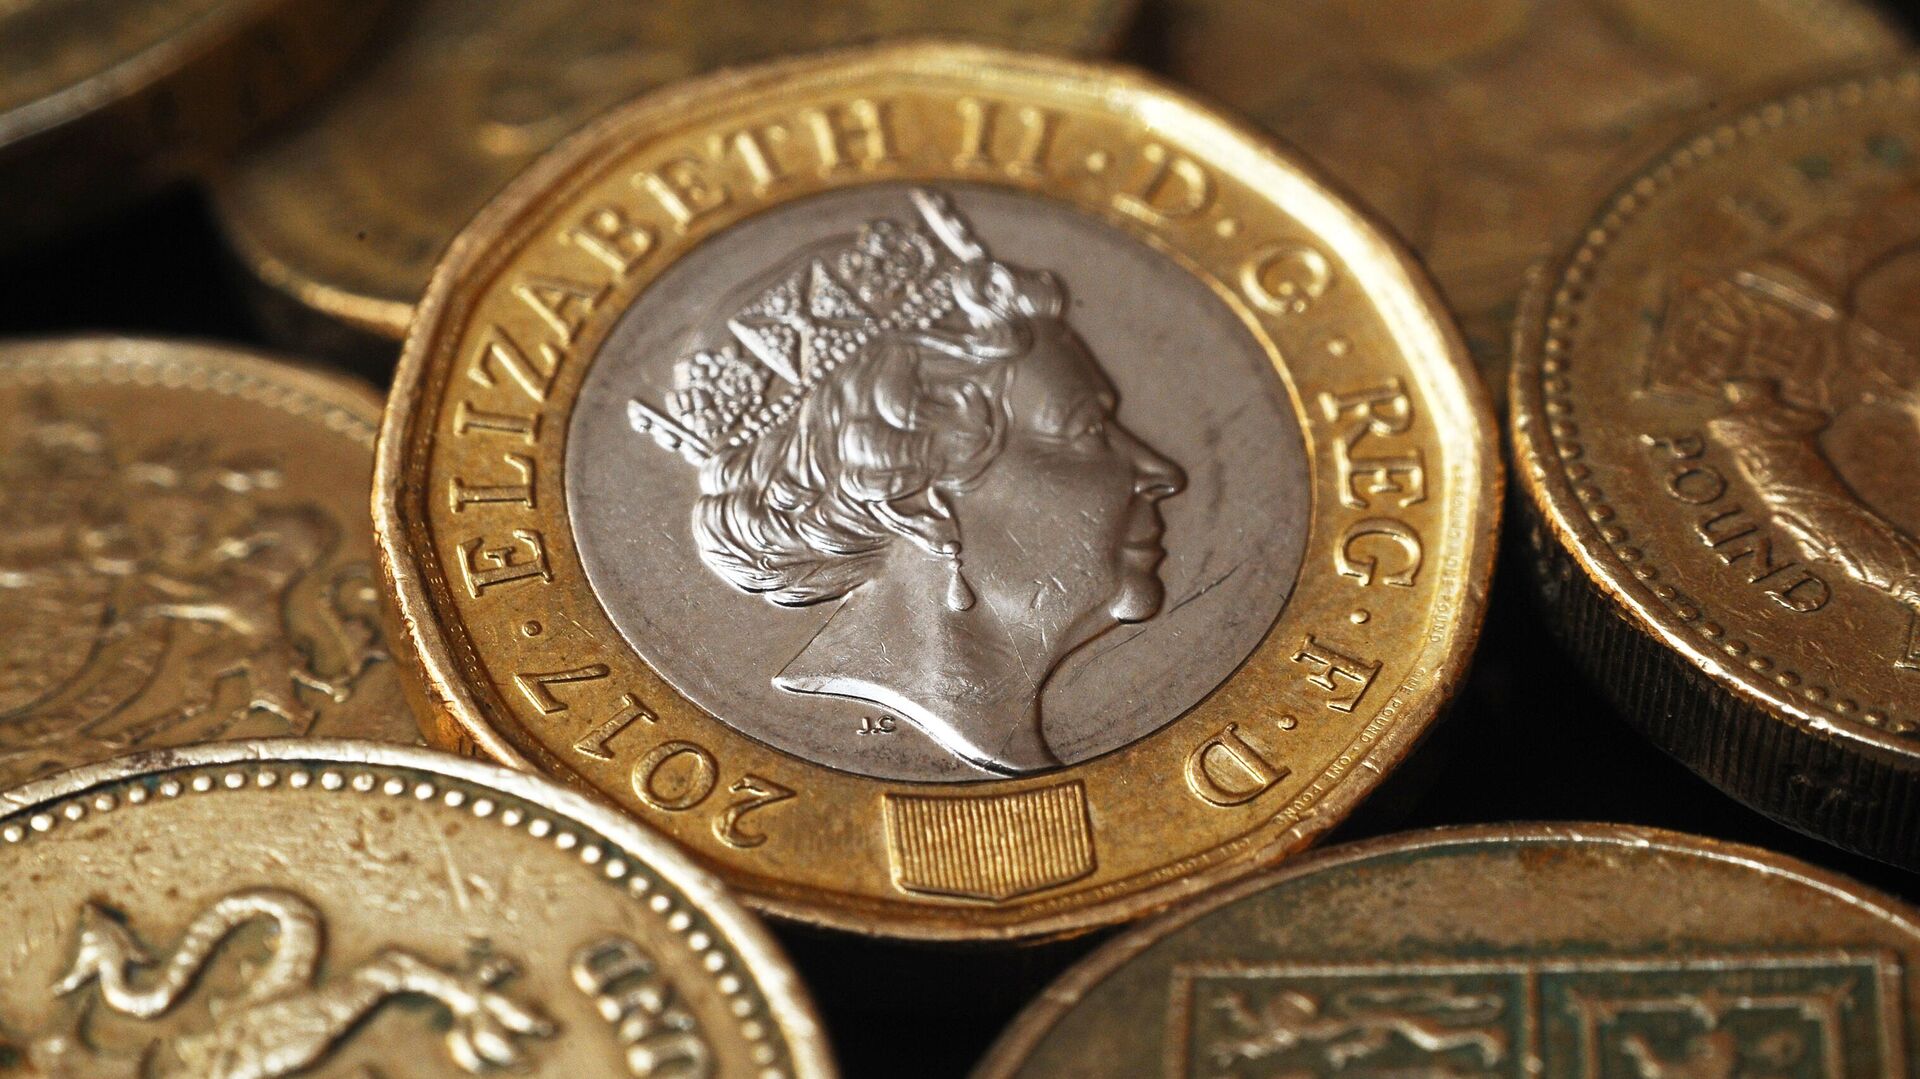 Монеты Великобритании номиналом один фунт стерлингов с портретом королевы Елизаветы Второй. - Sputnik Таджикистан, 1920, 20.02.2022